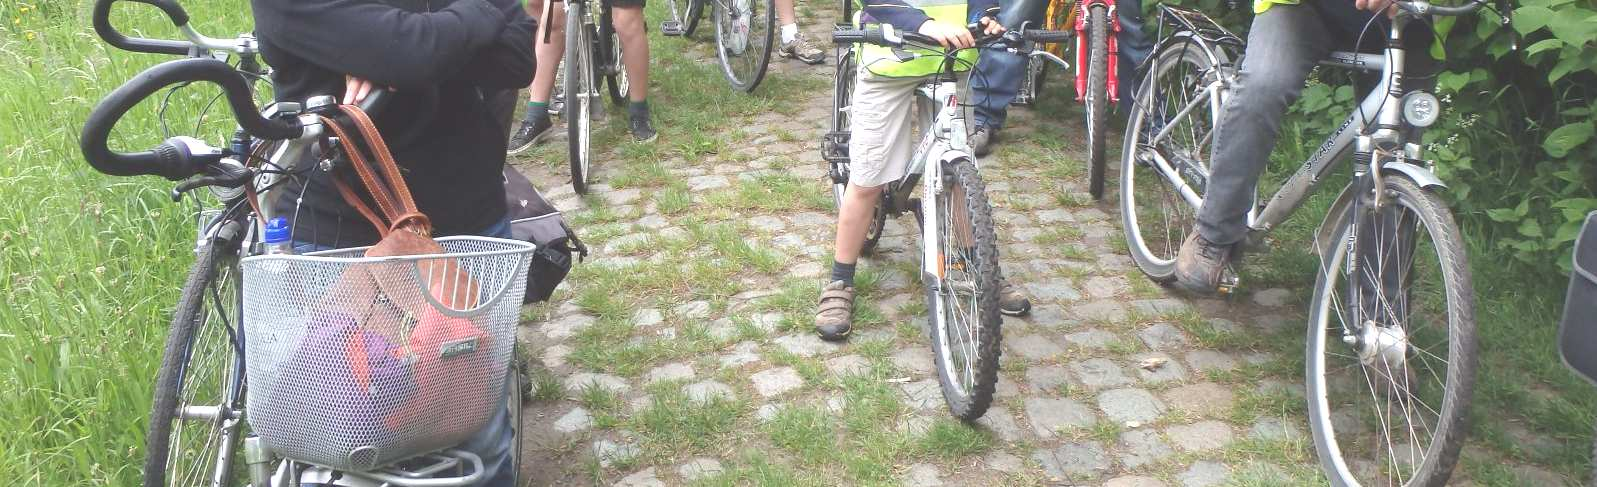 Zaterdag 23 mei: Fietstocht Eco-Cyclo Met dertien waren we: moedige fietsers die op ontdekkingstocht trokken in de groene gordel rond Antwerpen.